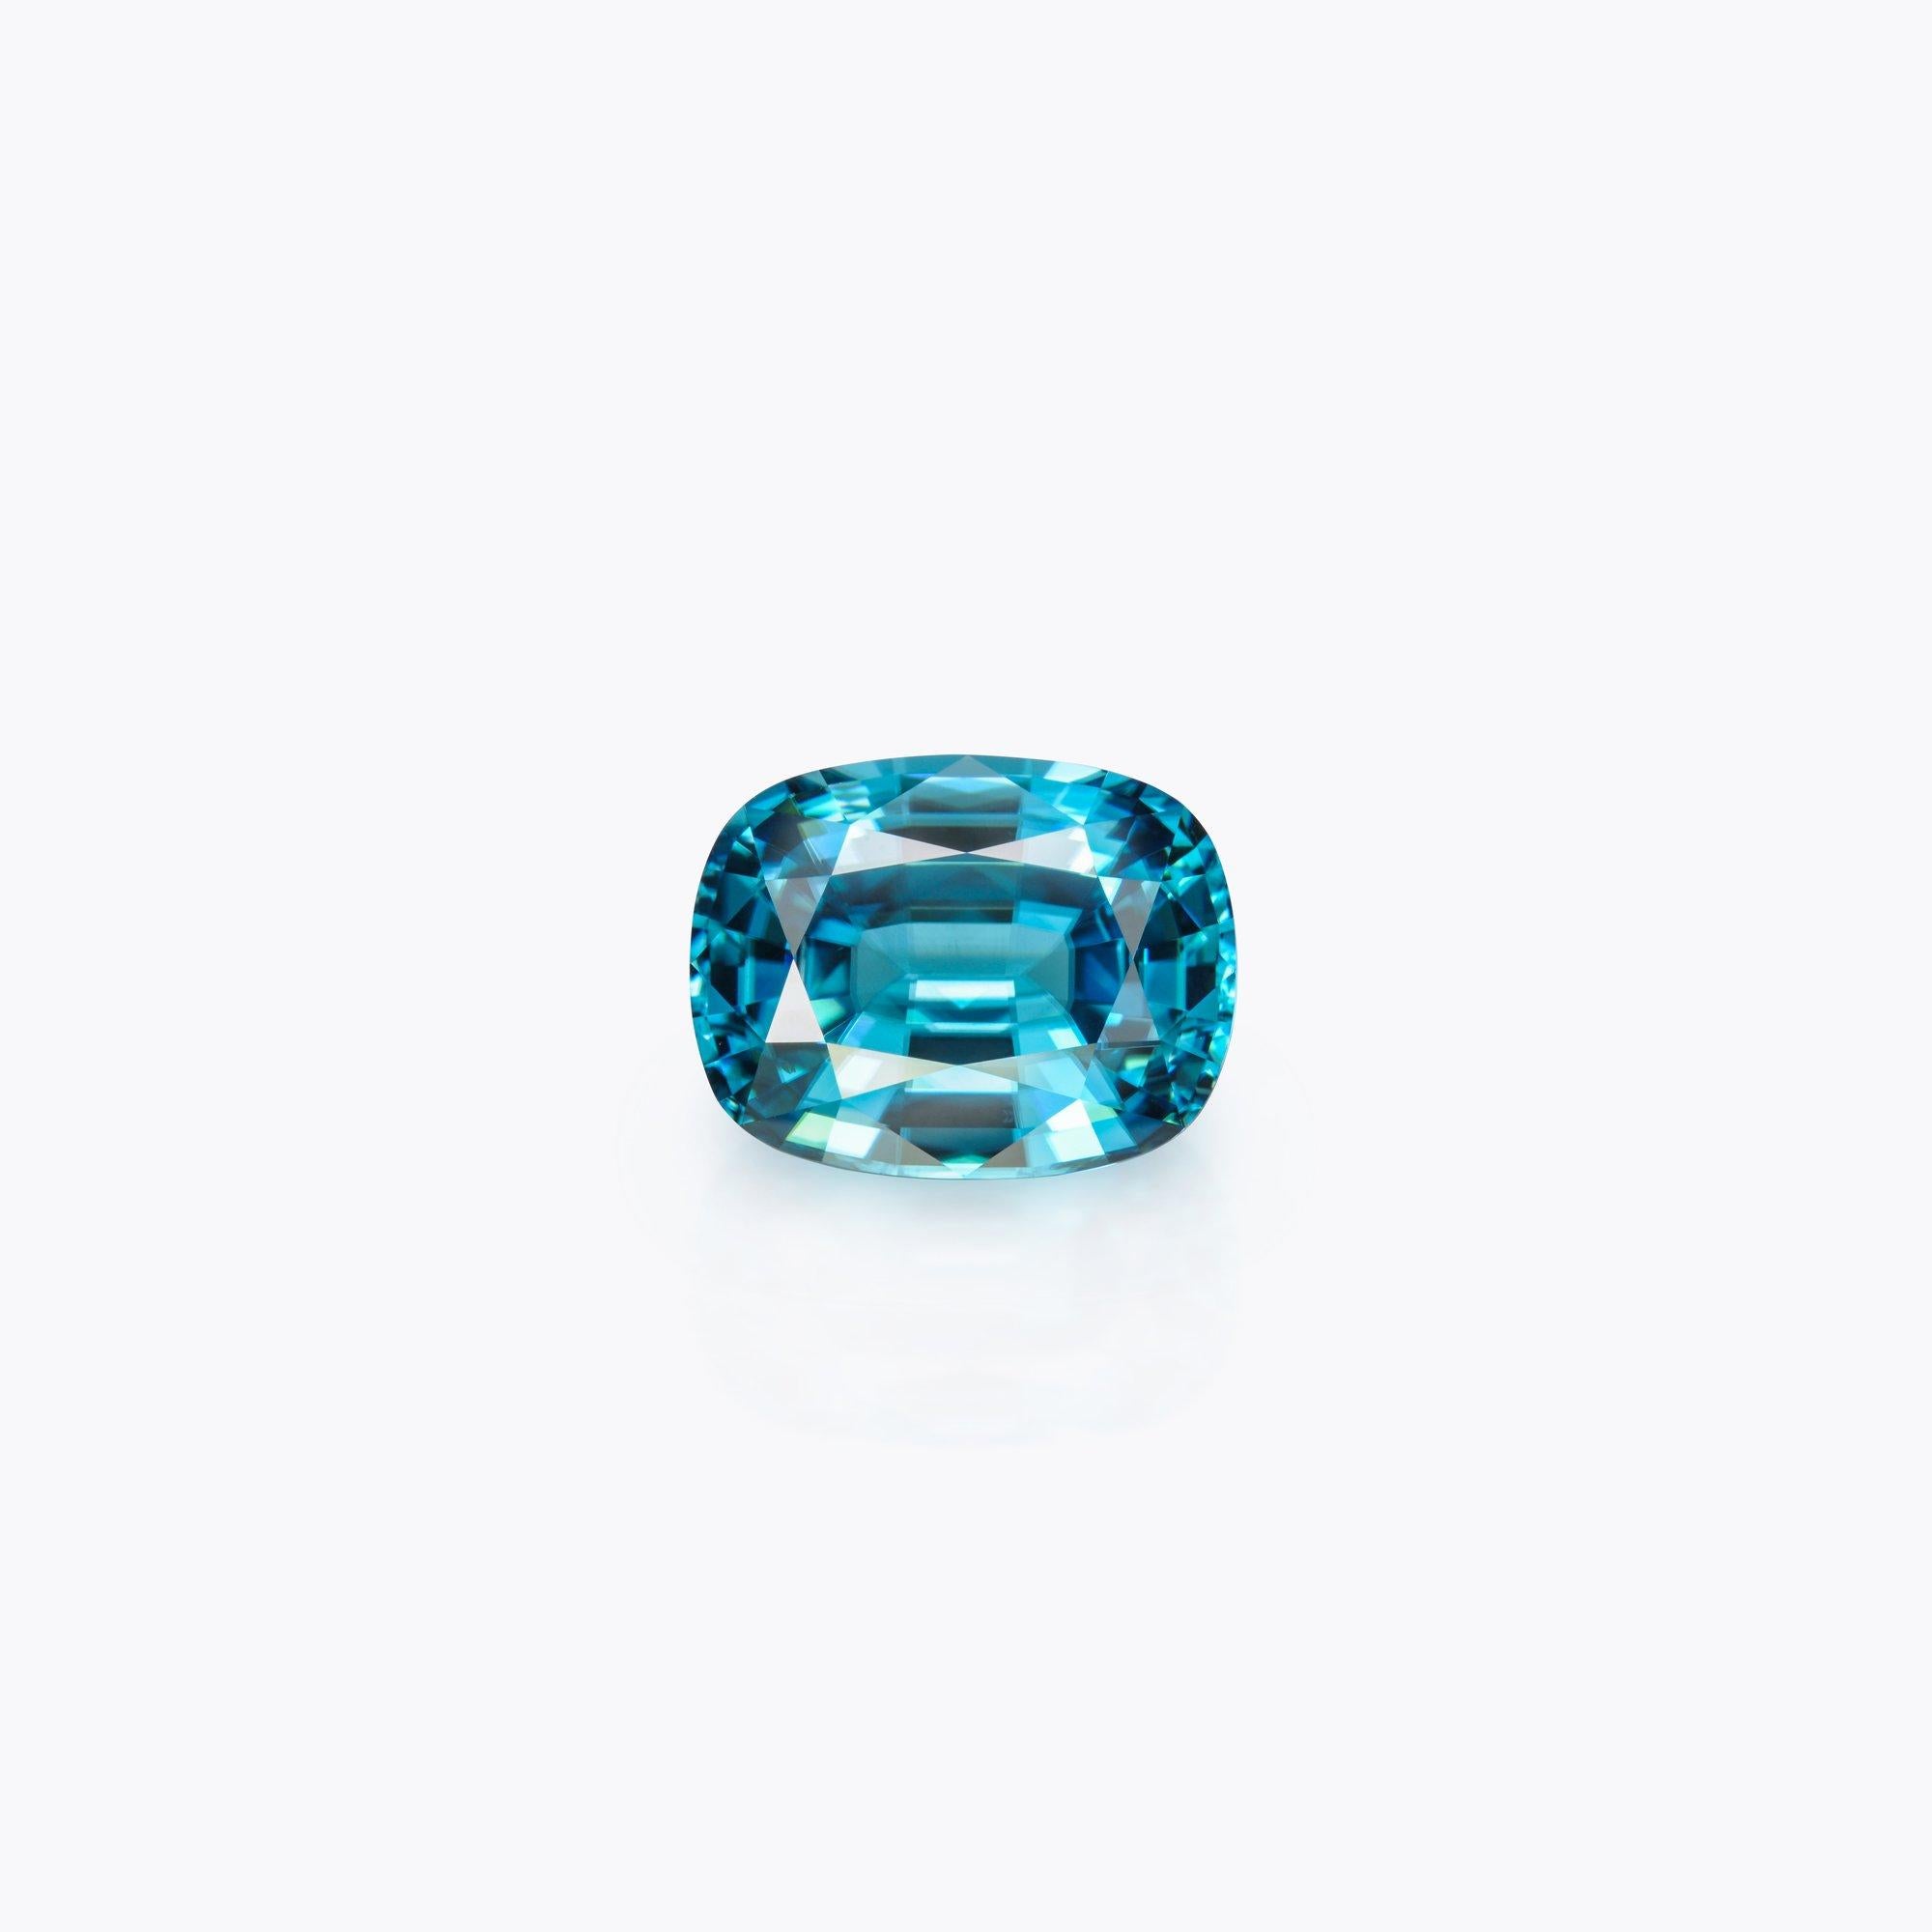 Modern Blue Zircon Ring Gem 14.76 Carat Rectangular Unset Cushion Loose Gemstone